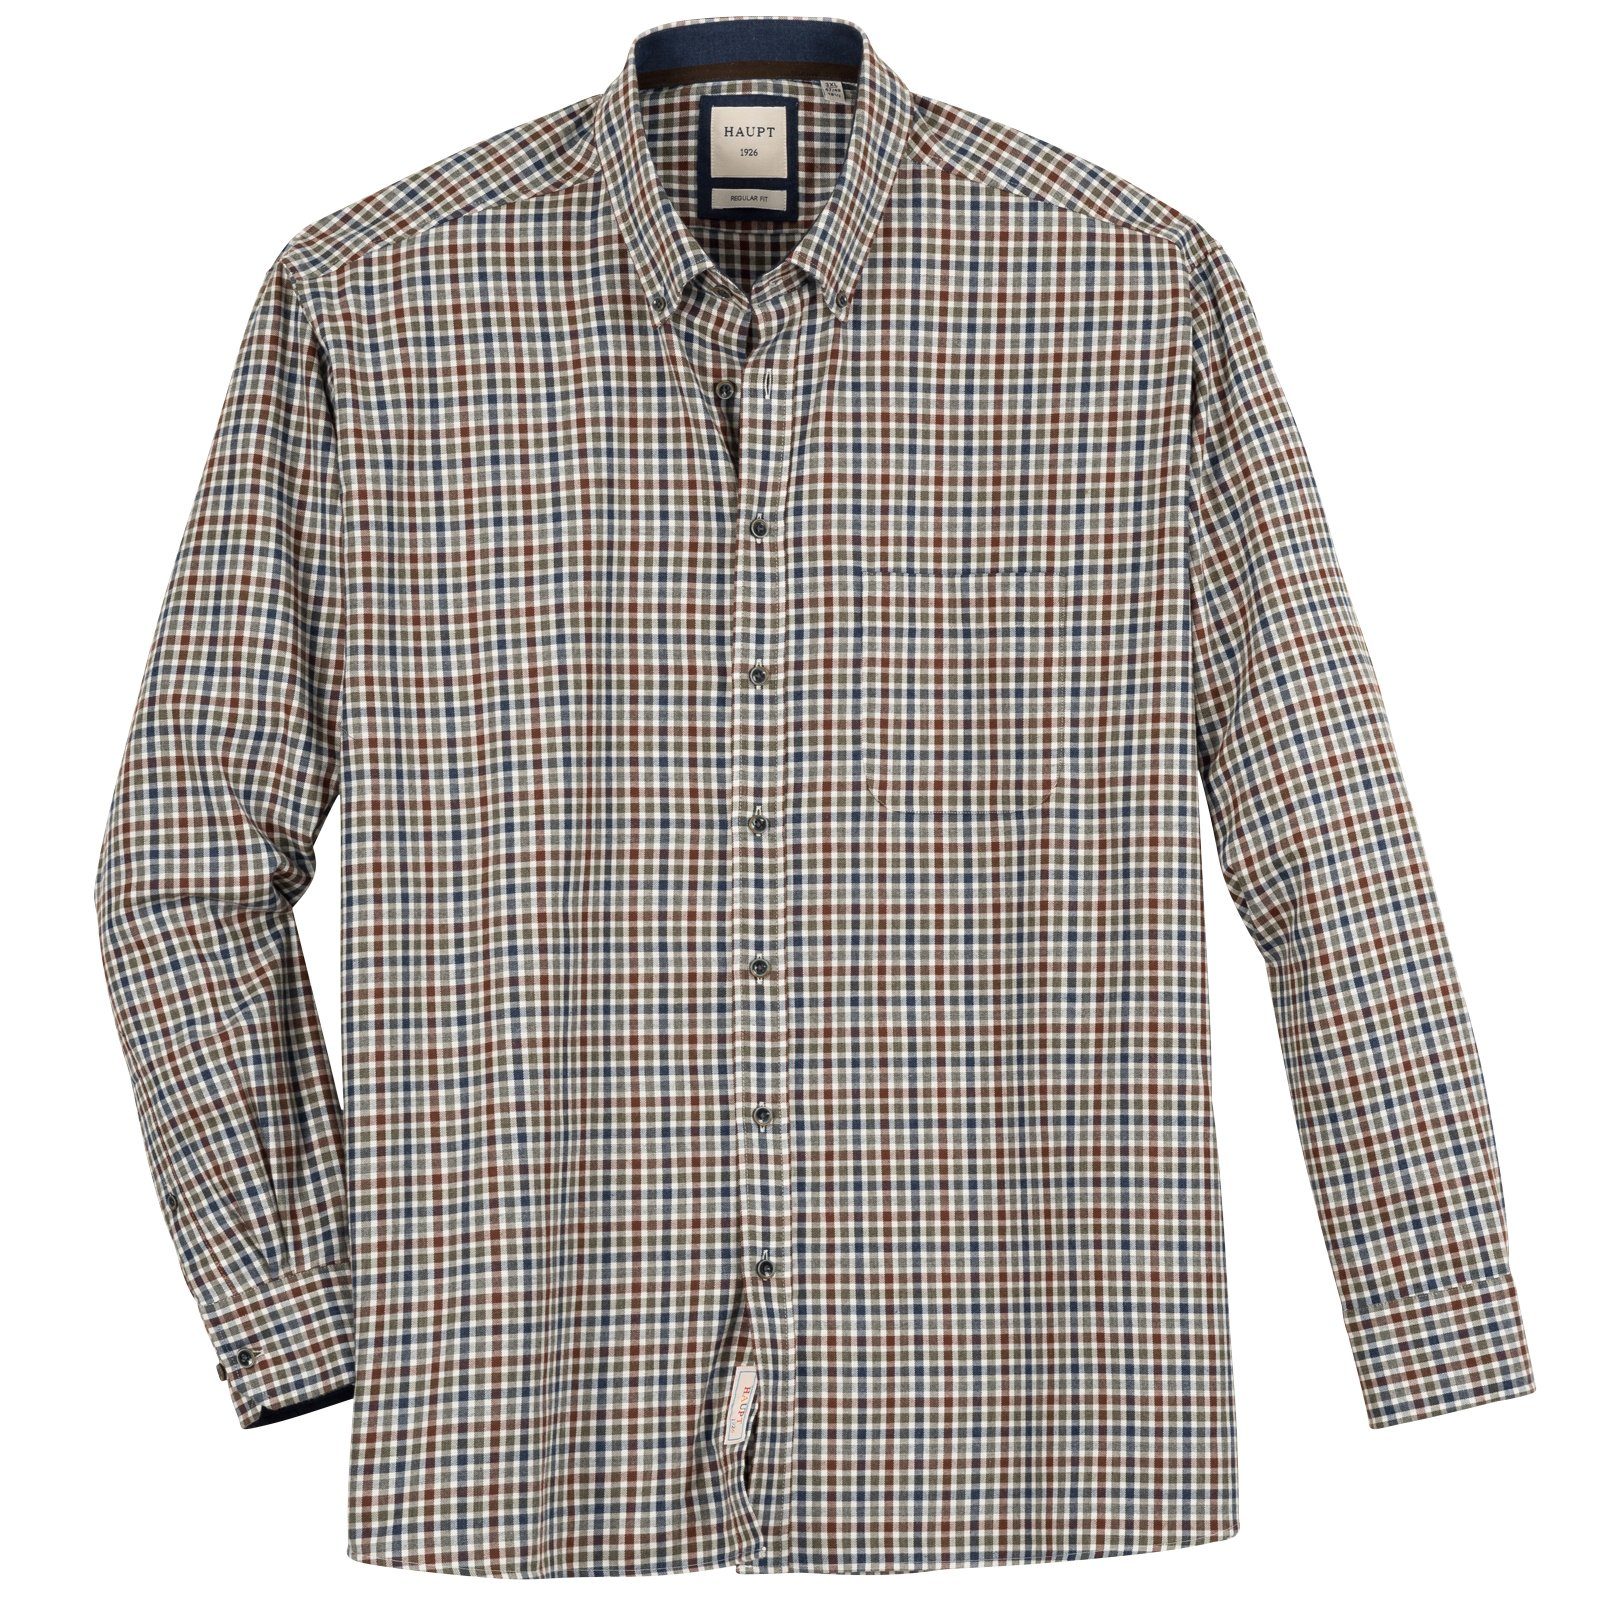 Haupt Regular Fit Hemden für Herren online kaufen | OTTO